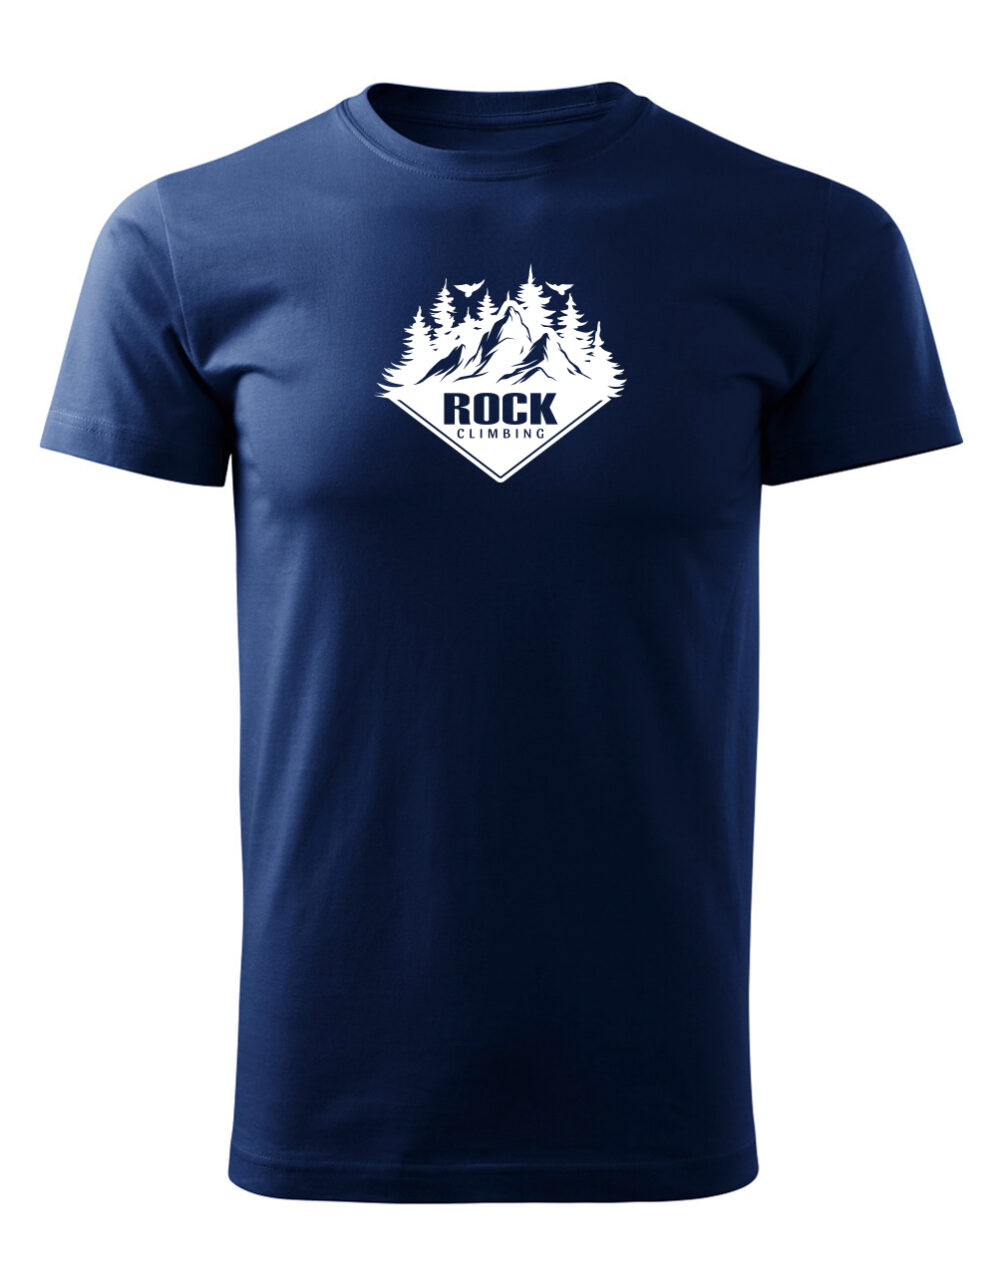 Pánské tričko s potiskem Rock climbing námořní modrá